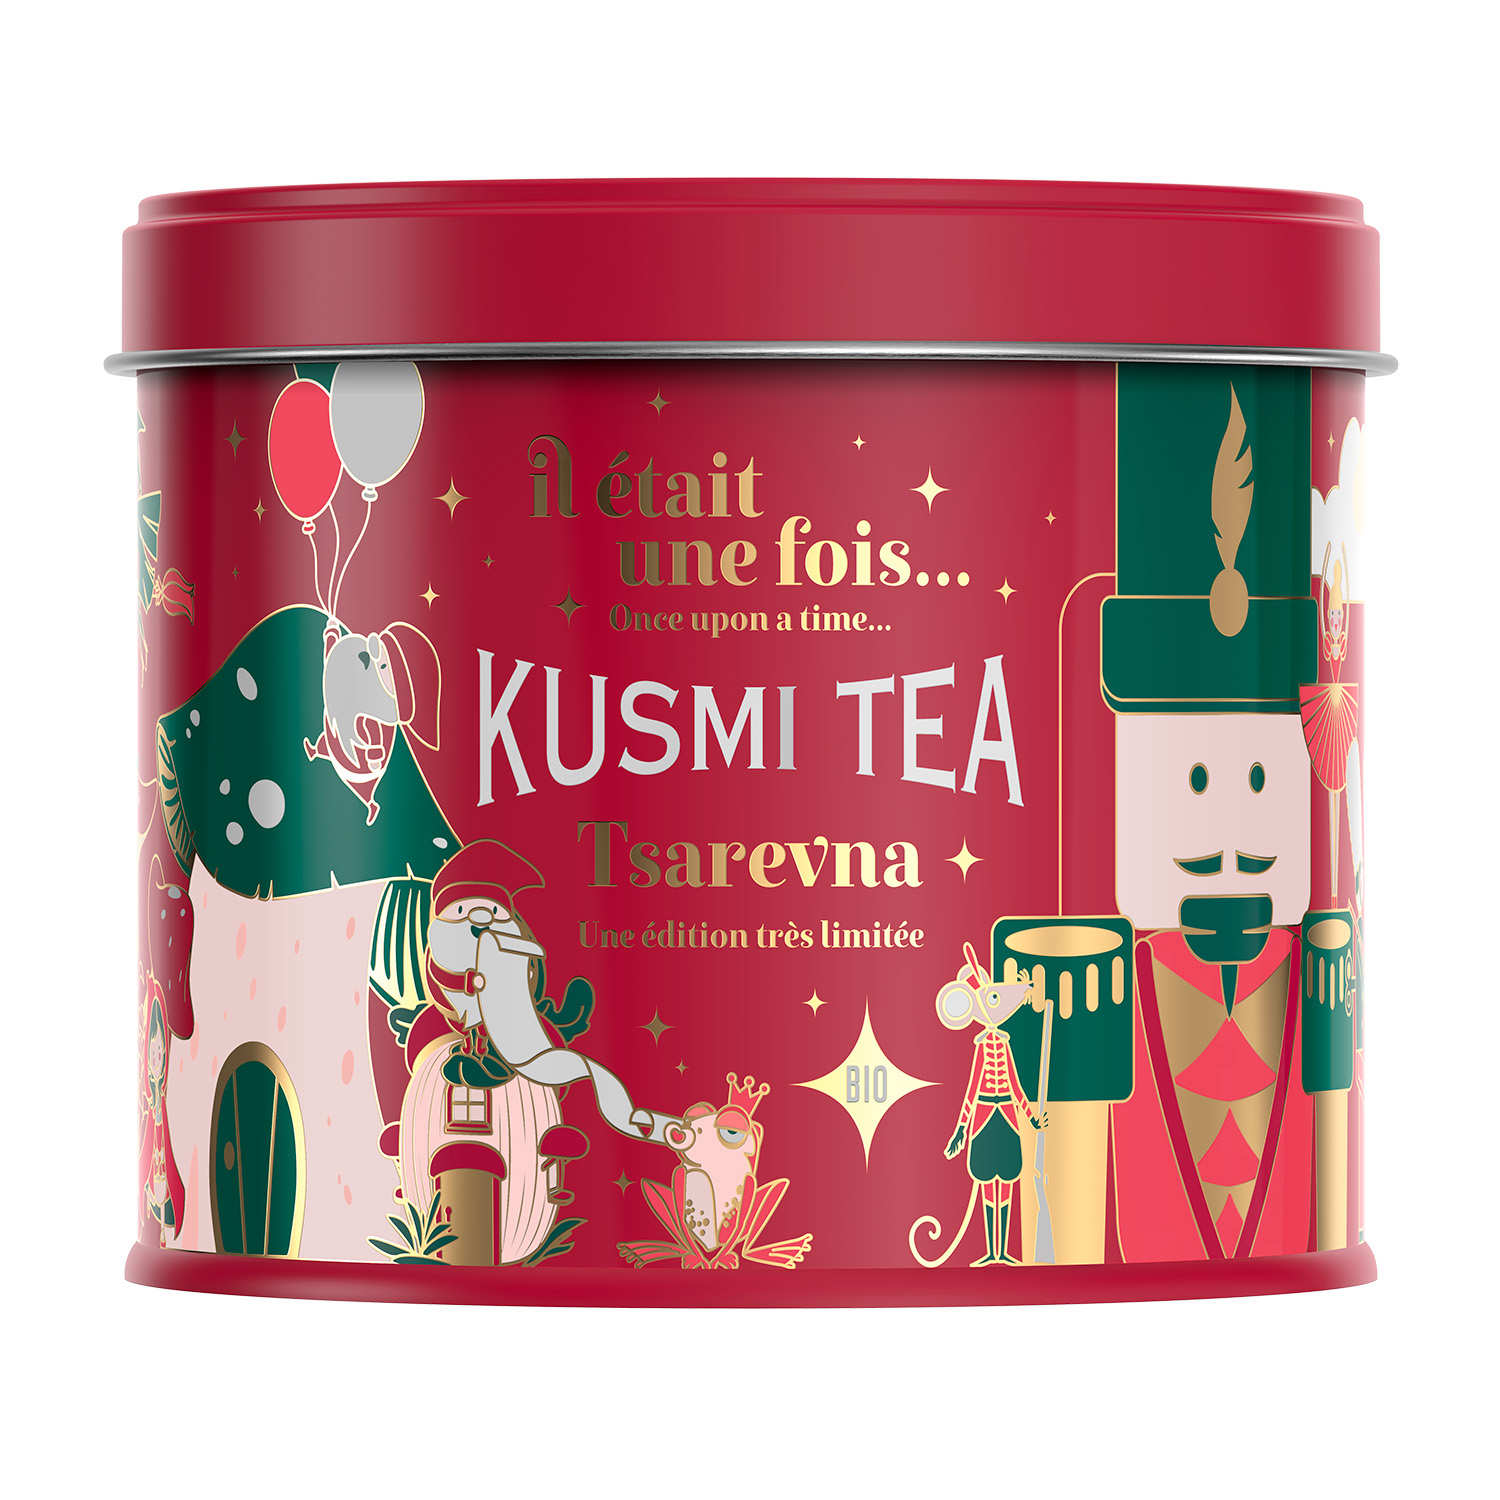 Kusmi Tea : Tsarevna en édition limitée et un premier calendrier